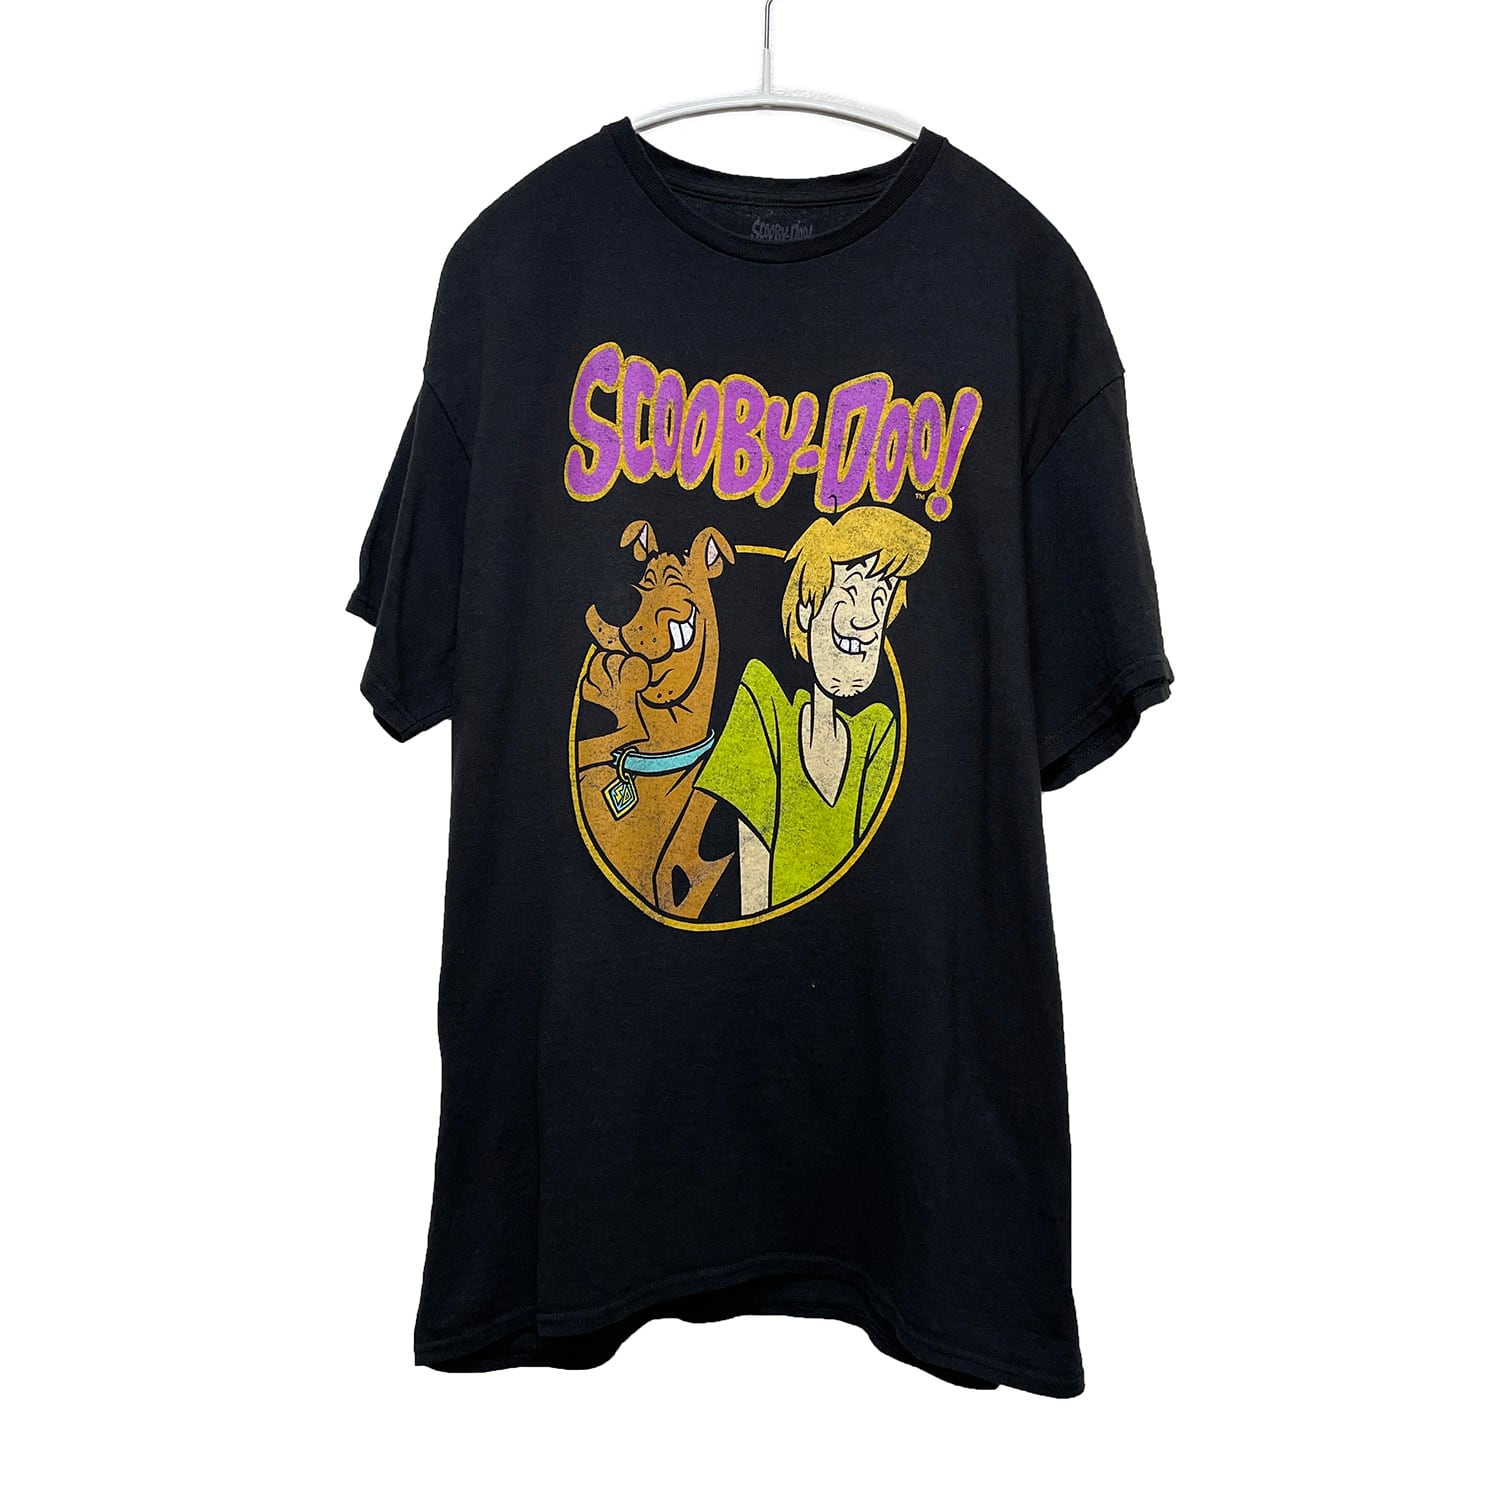 USA古着 半袖 Tシャツ アニメ スクービードゥー Scooby-Doo ブラック